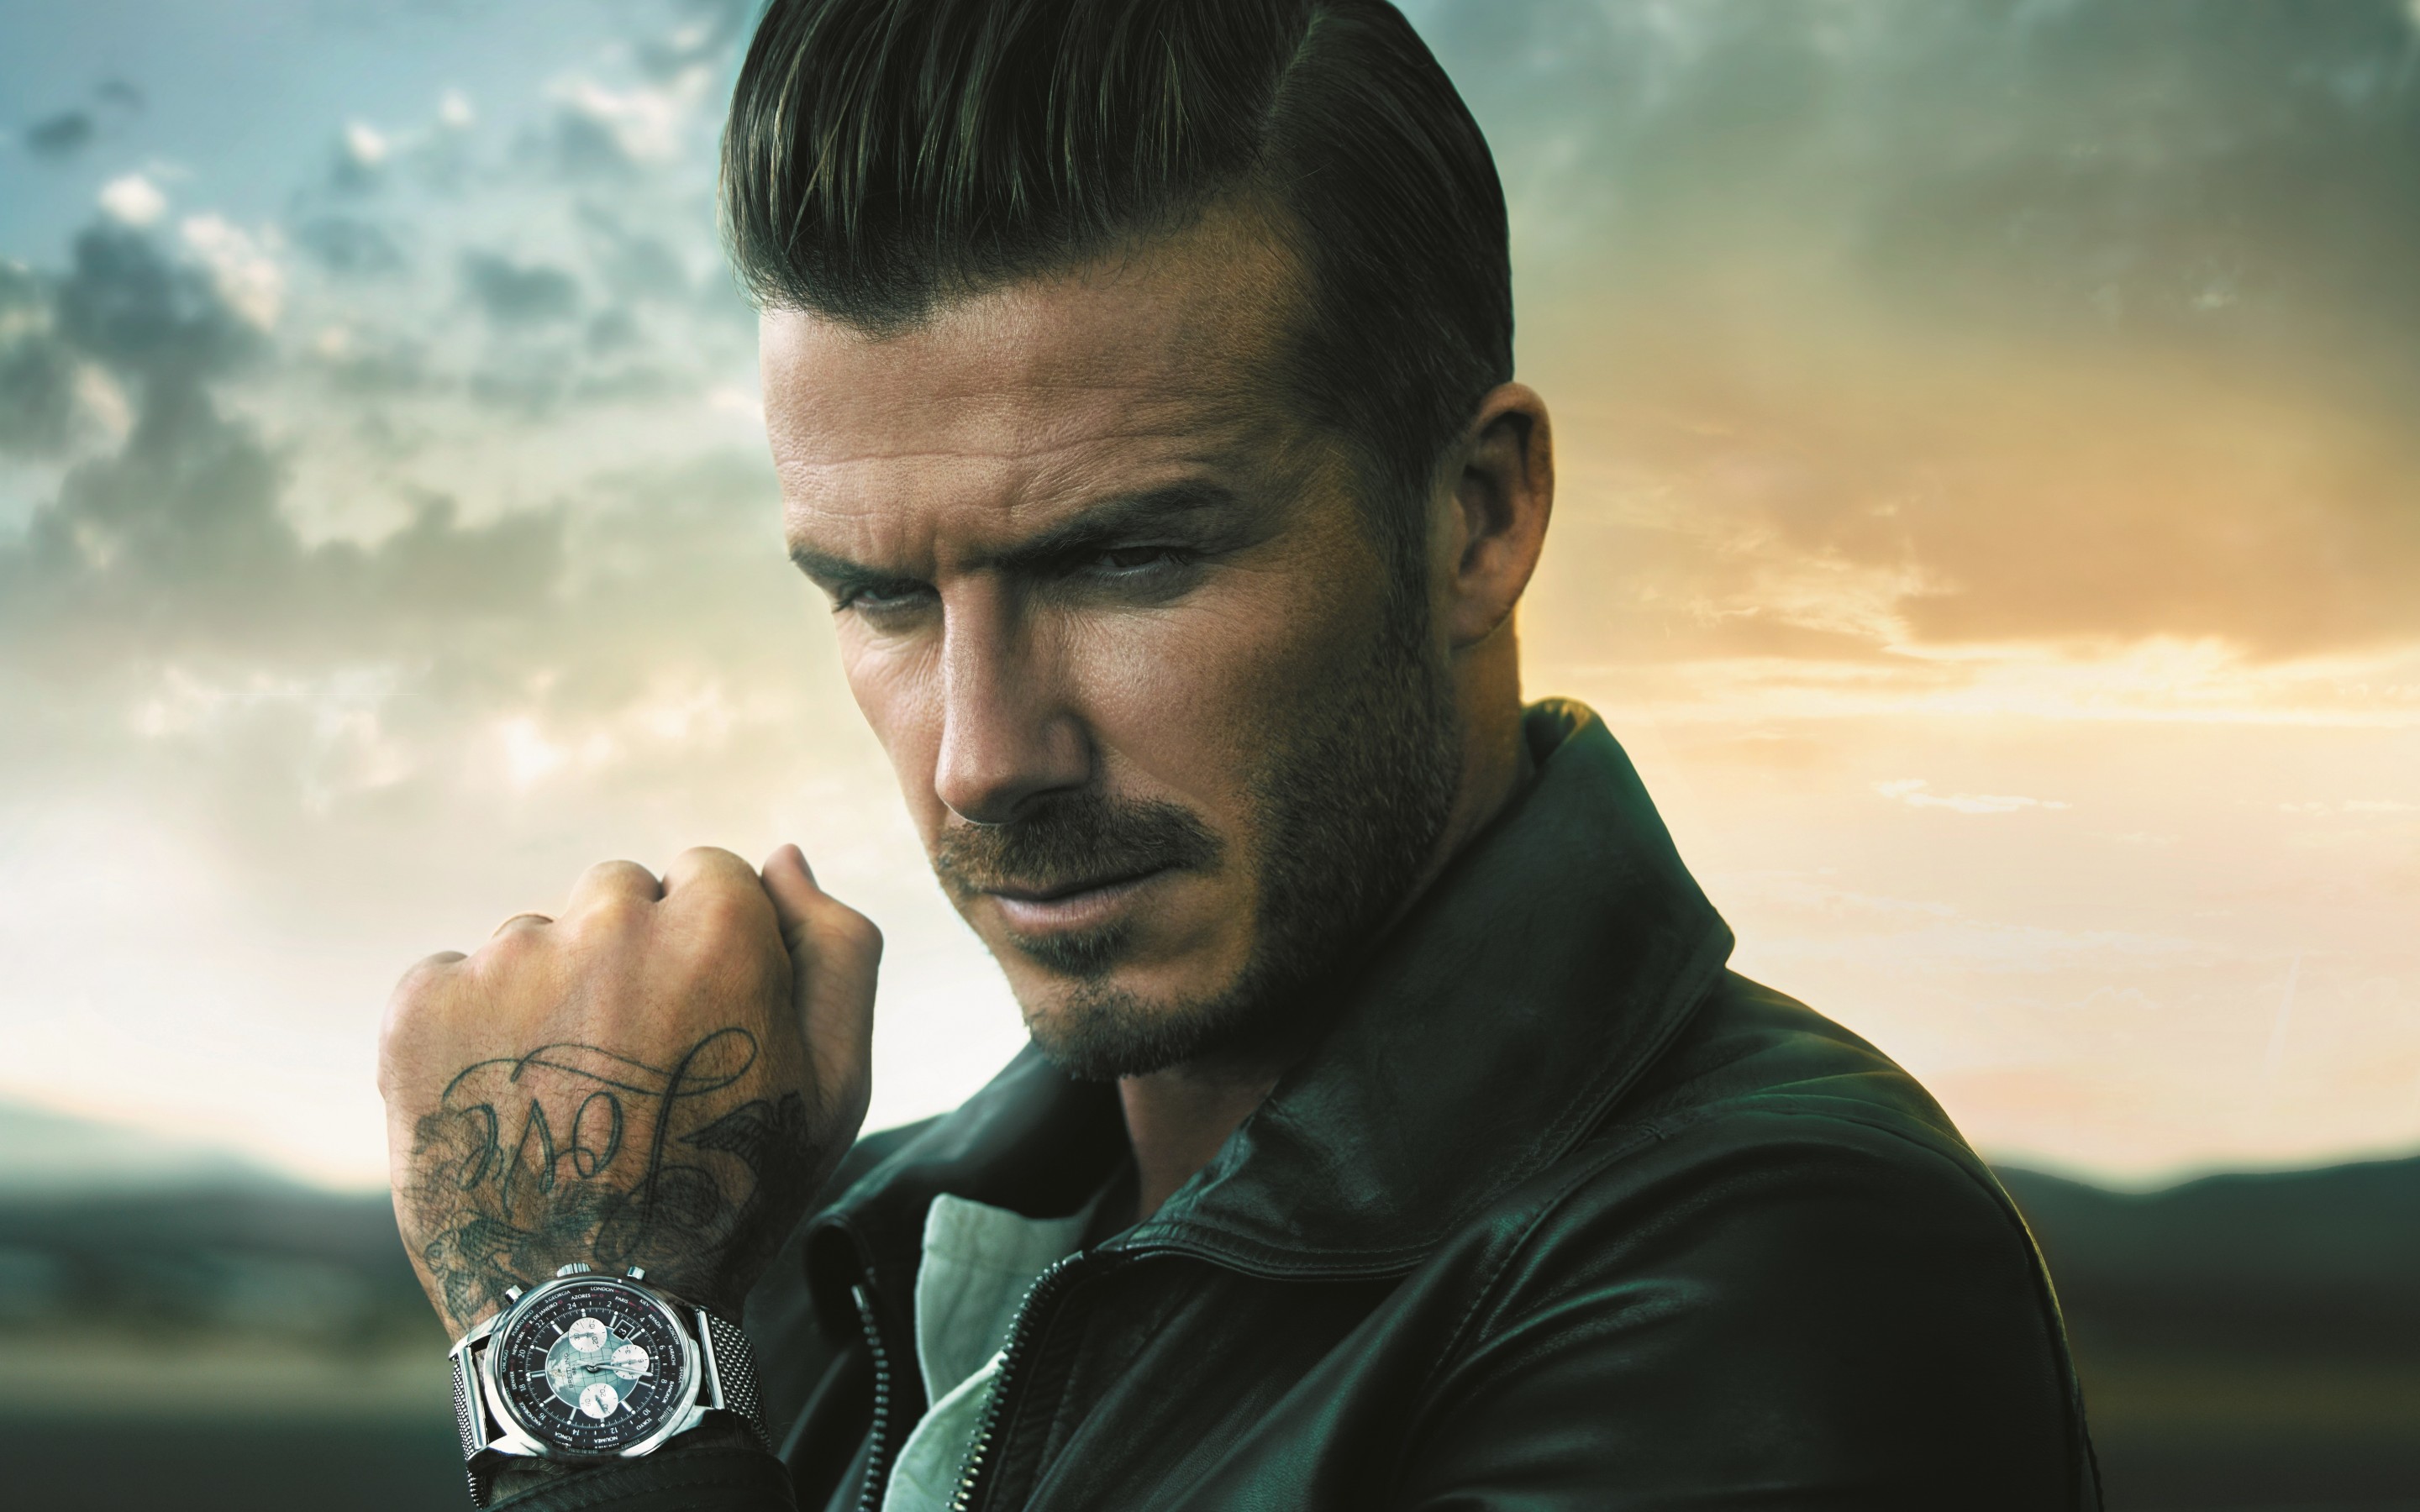 Melhores papéis de parede de David Beckham para tela do telefone